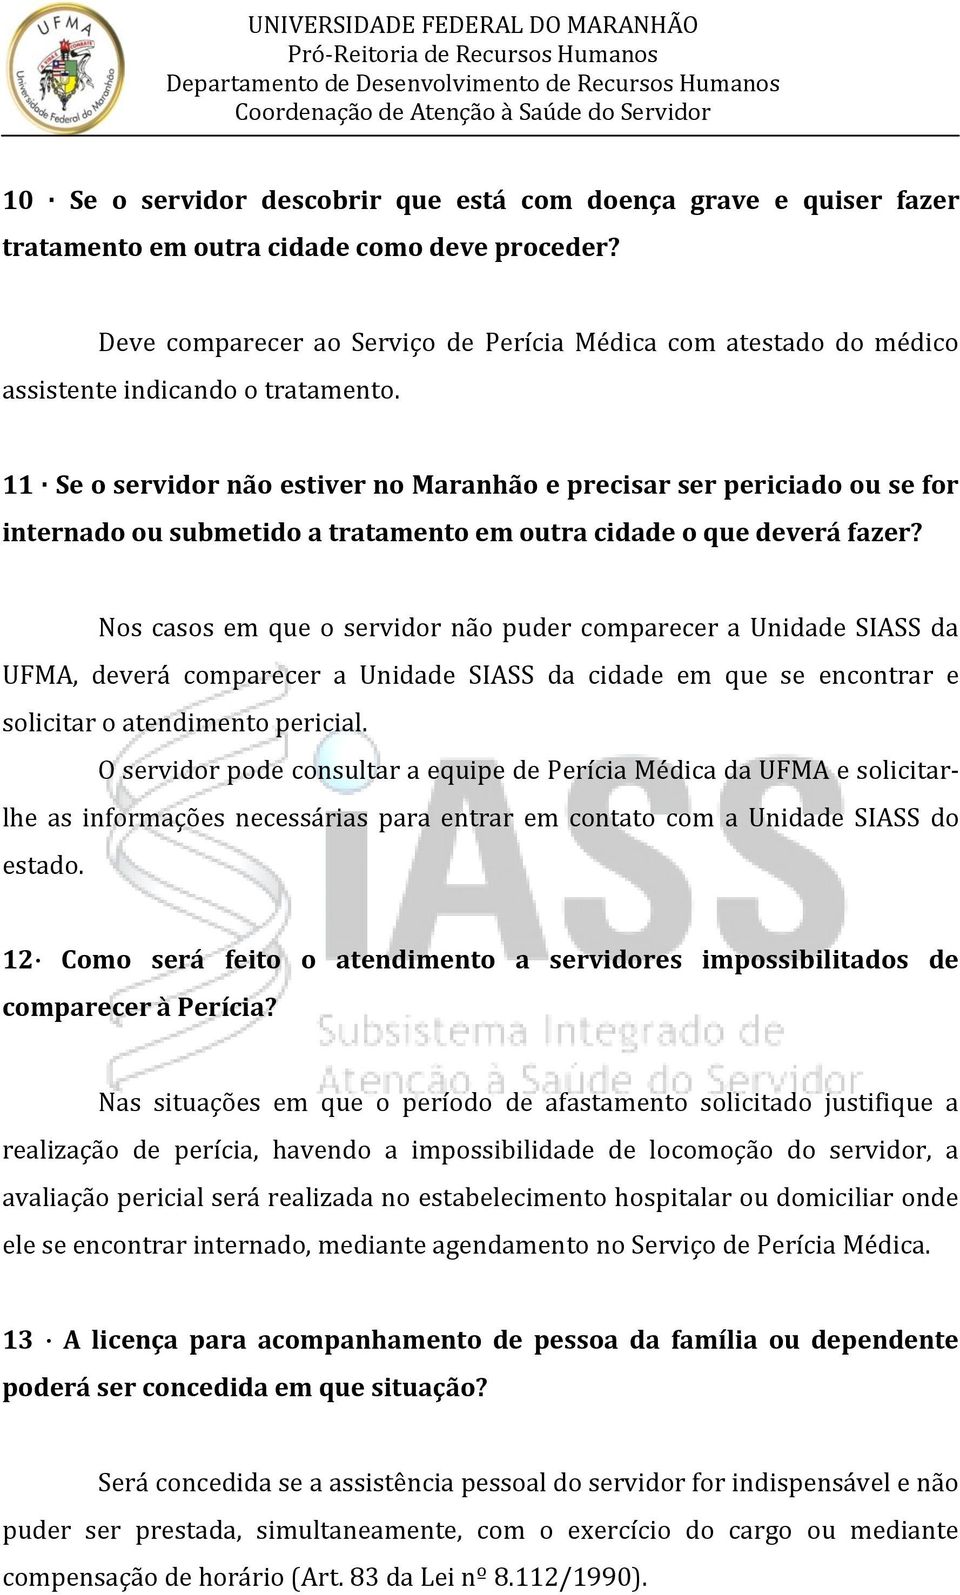 11 Se o servidor não estiver no Maranhão e precisar ser periciado ou se for internado ou submetido a tratamento em outra cidade o que deverá fazer?